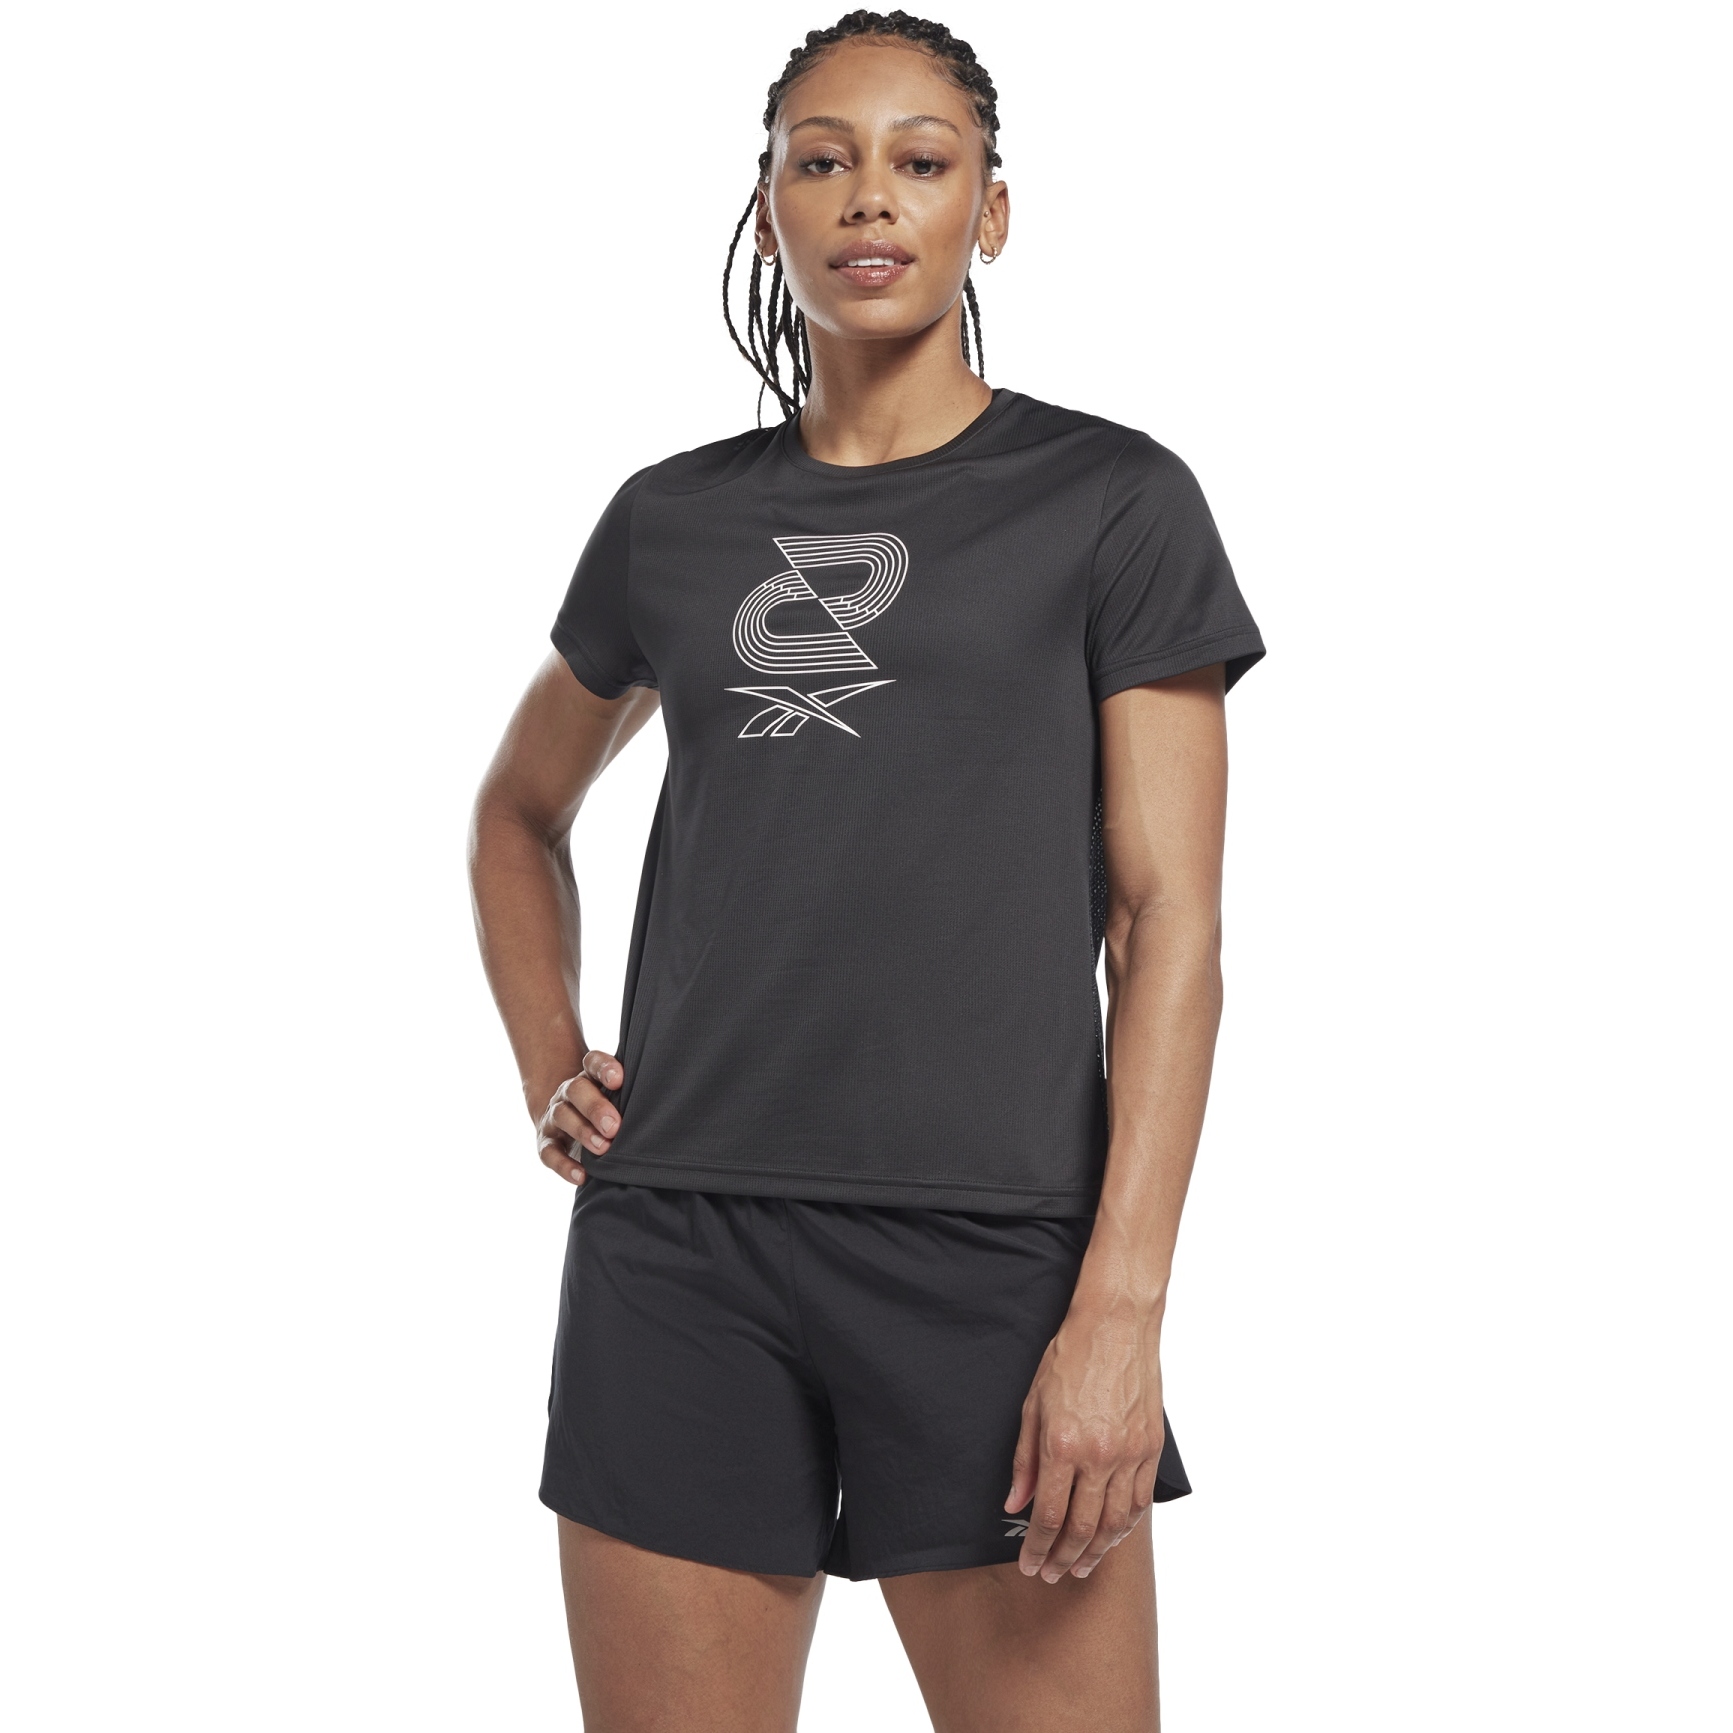 Produktbild von Reebok Running SW Graphic T-Shirt Damen - night black